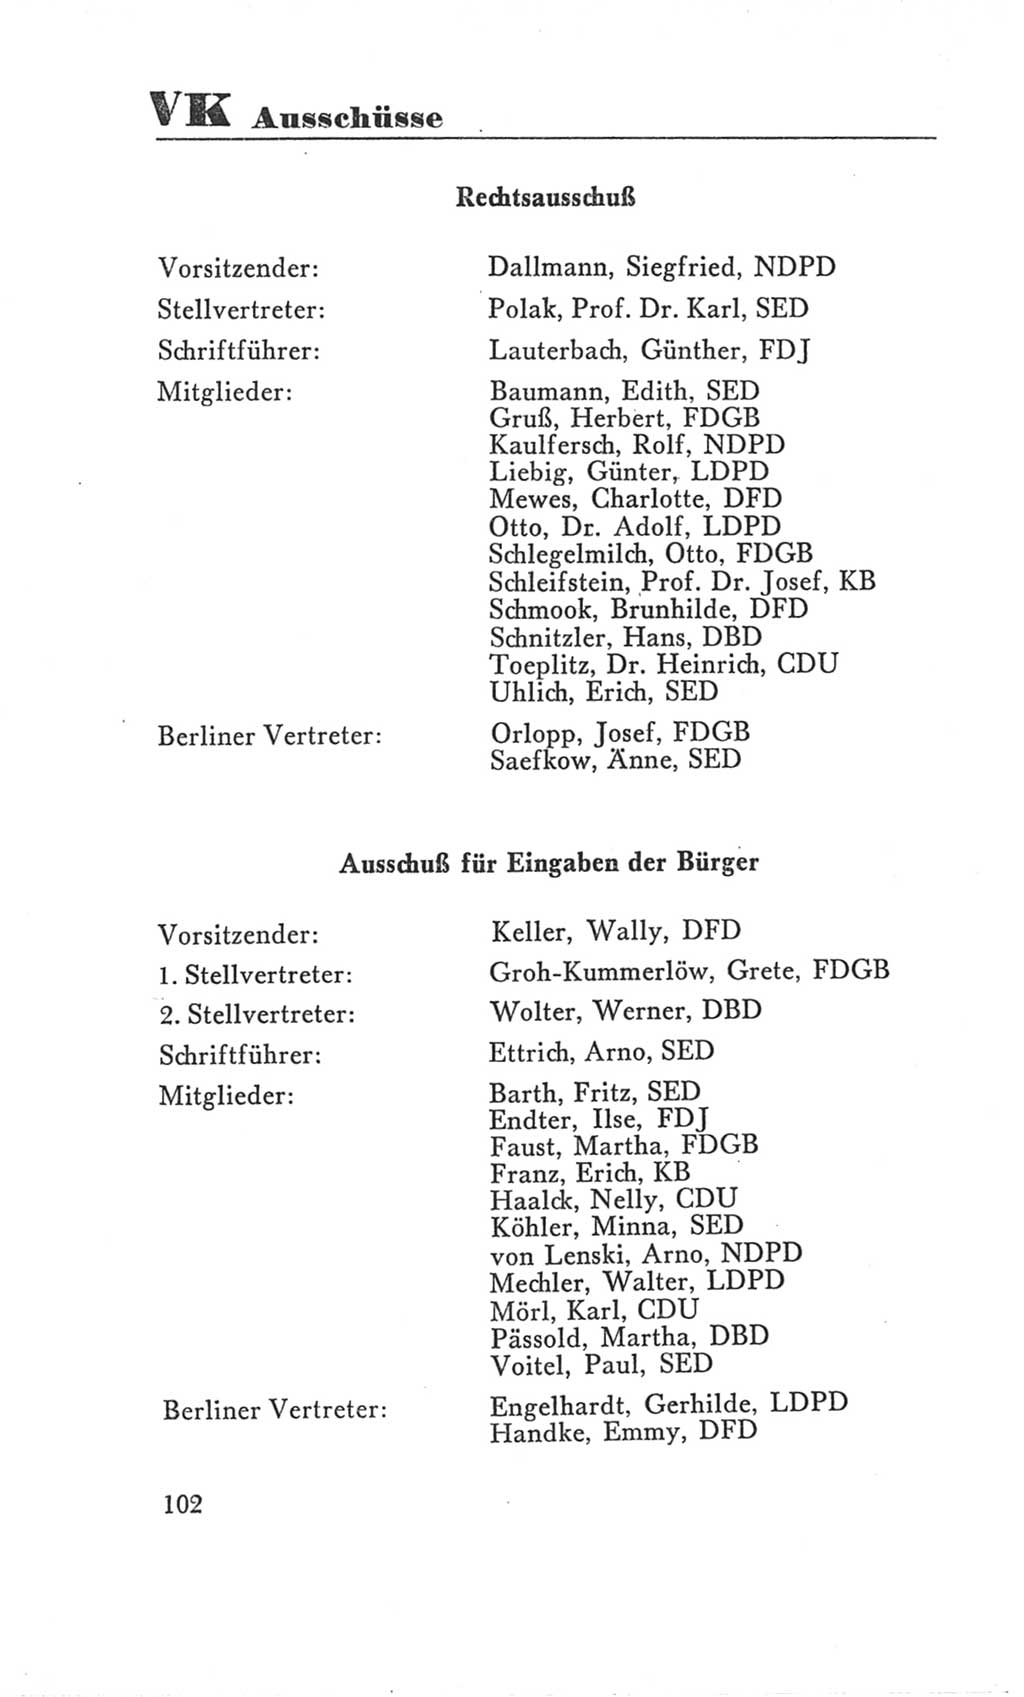 Handbuch der Volkskammer (VK) der Deutschen Demokratischen Republik (DDR), 3. Wahlperiode 1958-1963, Seite 102 (Hdb. VK. DDR 3. WP. 1958-1963, S. 102)